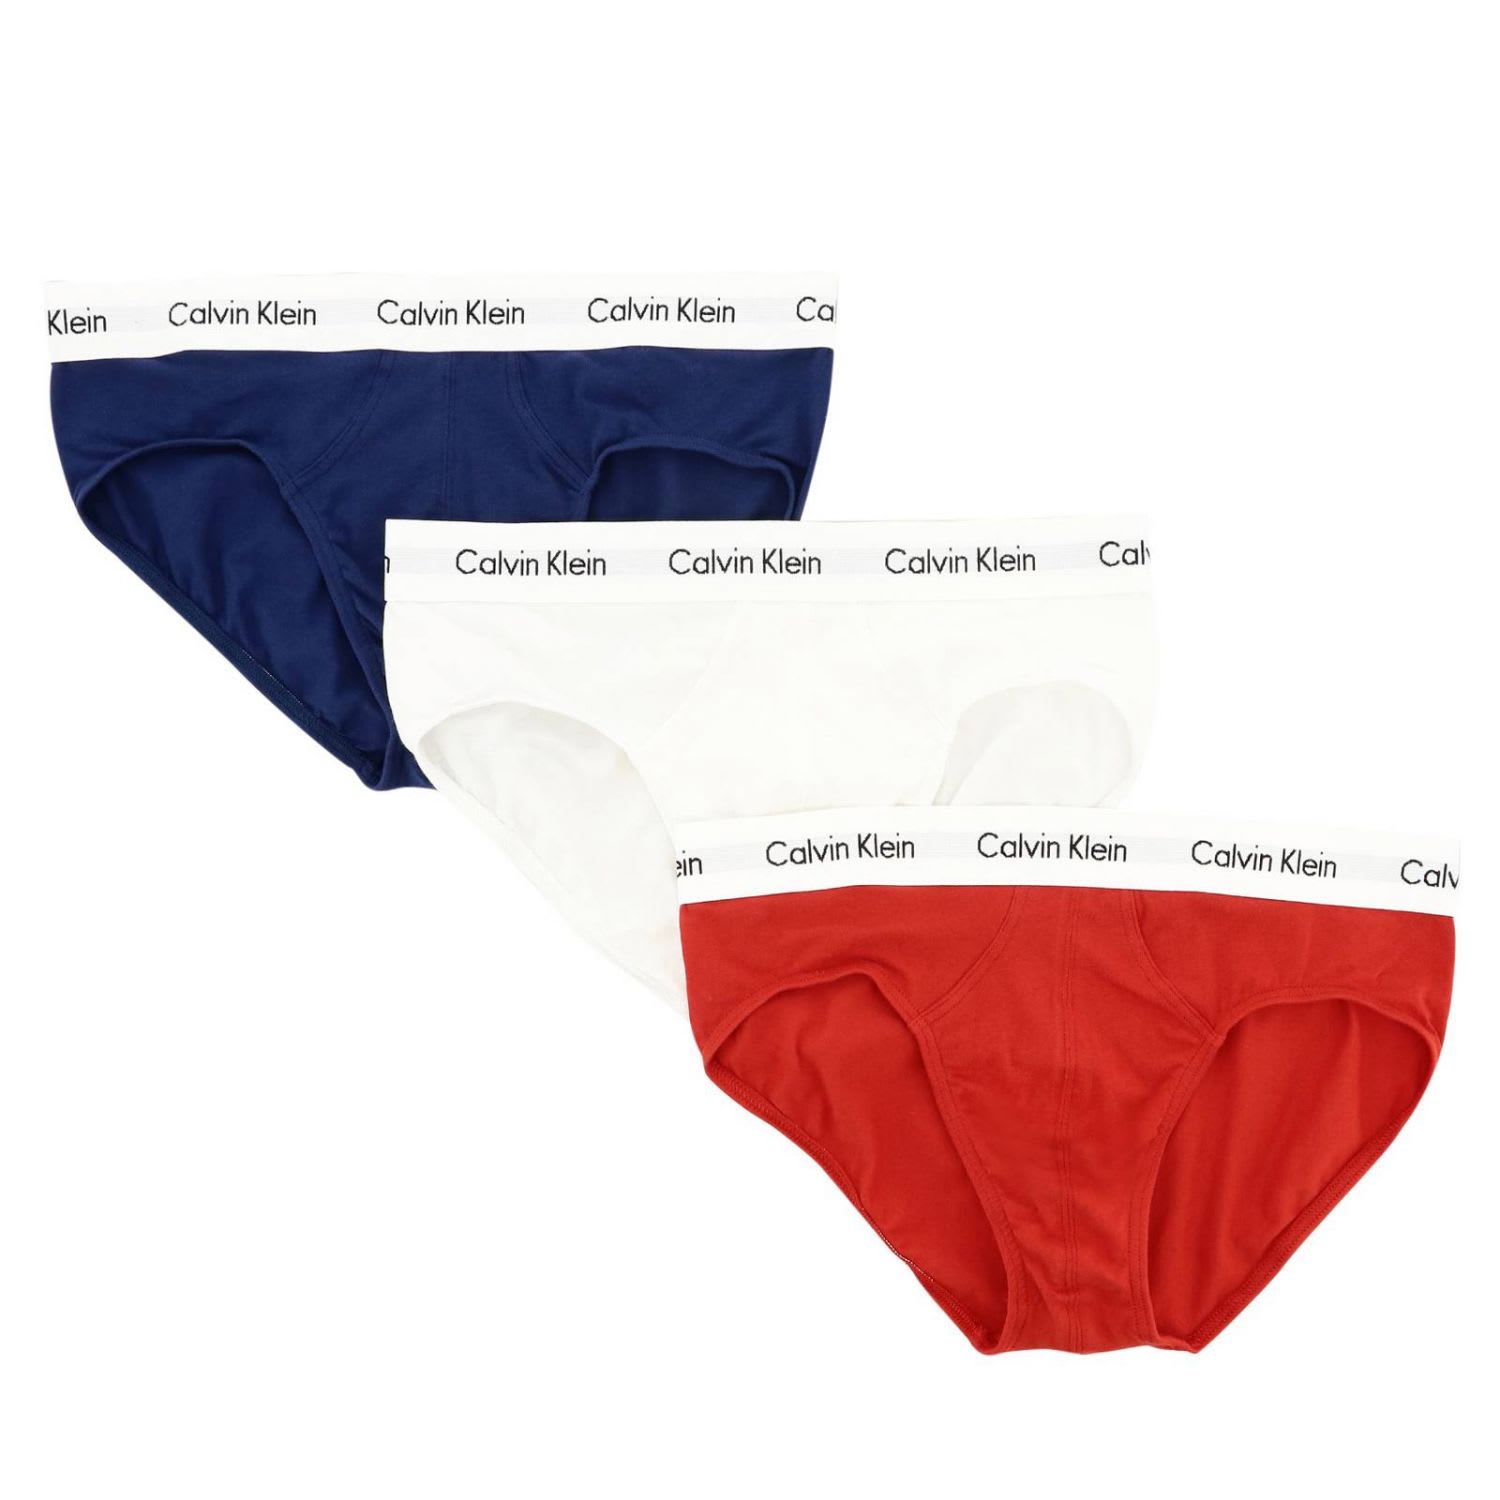 calvin klein set underwear